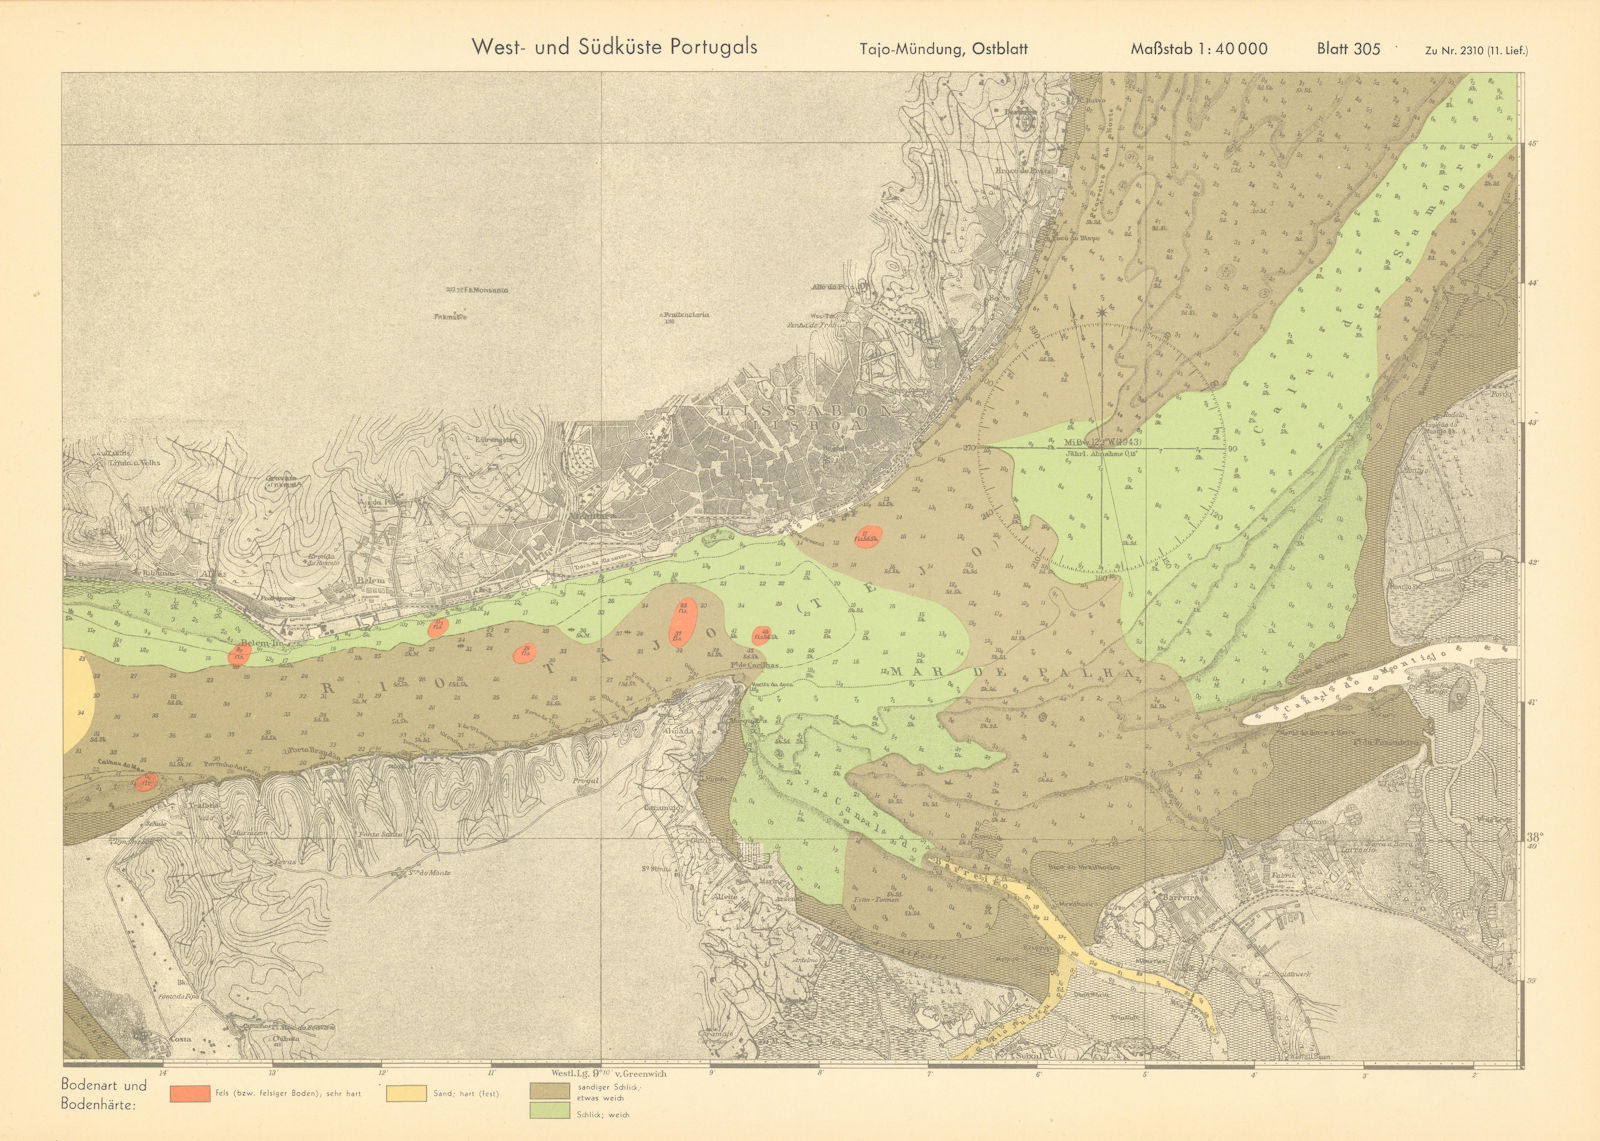 Lisbon. Tagus estuary east. Portugal. KRIEGSMARINE Nazi map 1943 old